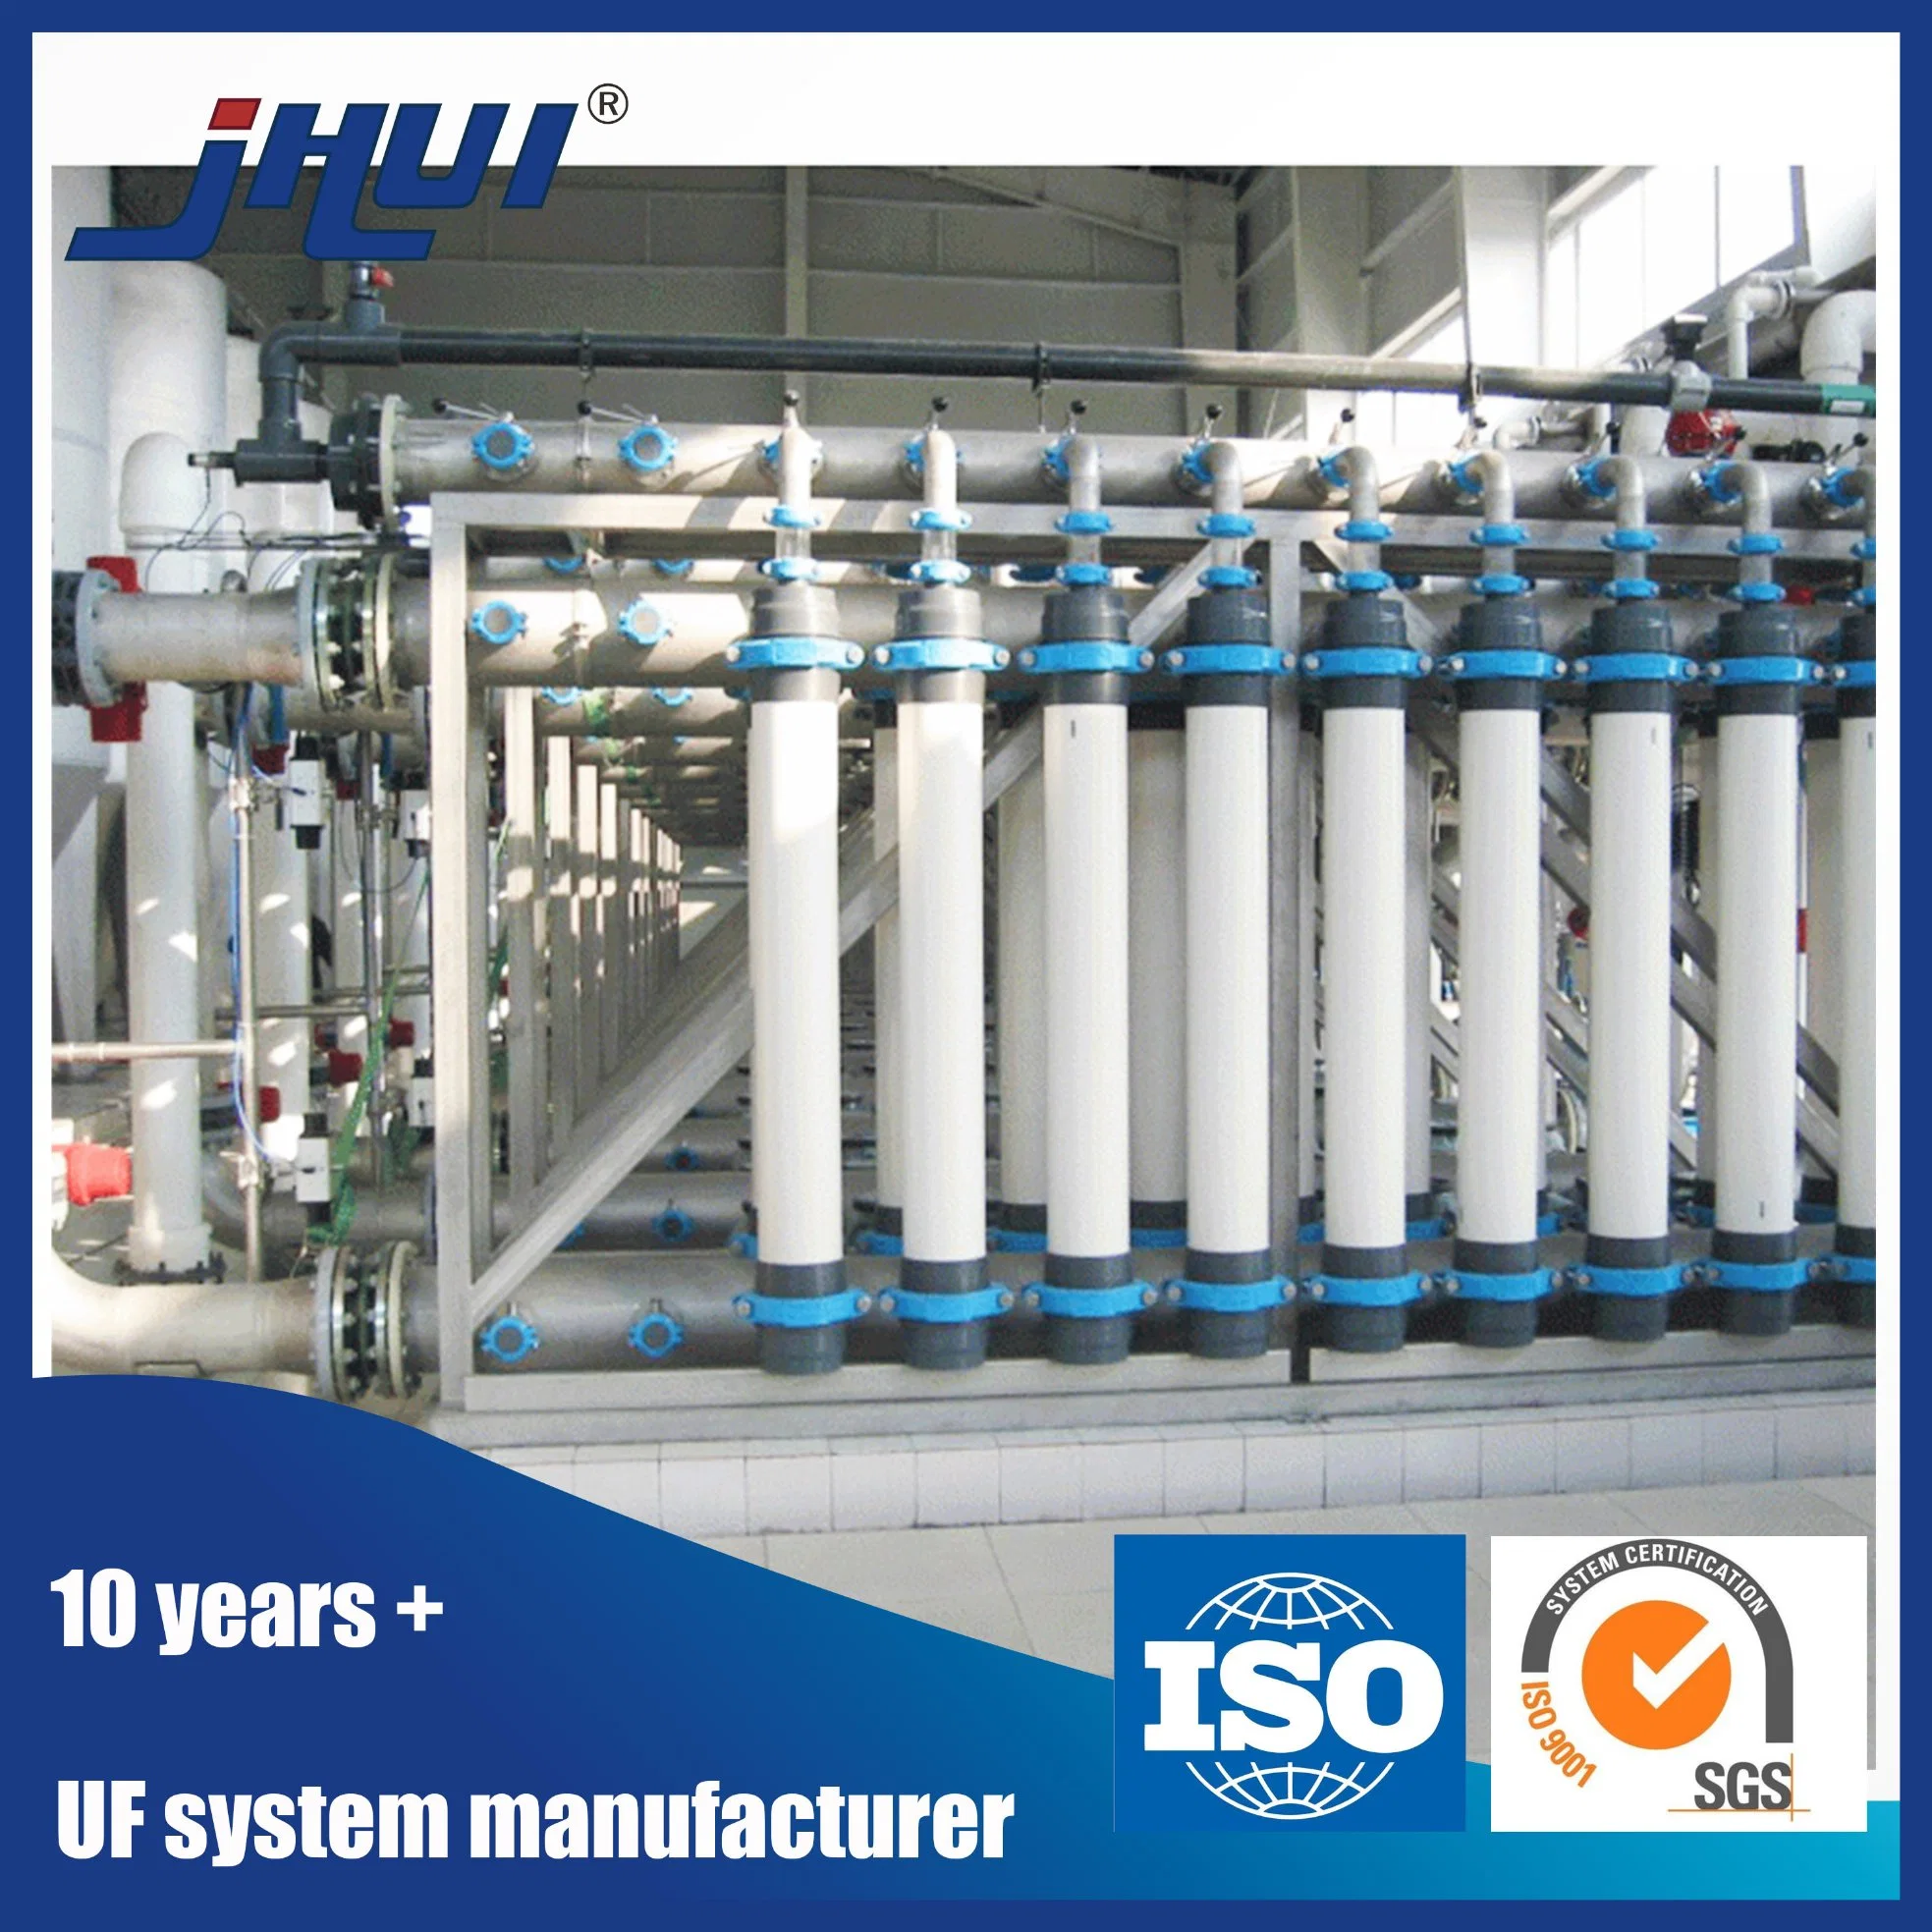 Abwasser UF Wasseraufbereitung Ausrüstung Membransystem für Trinkwasser Wasser